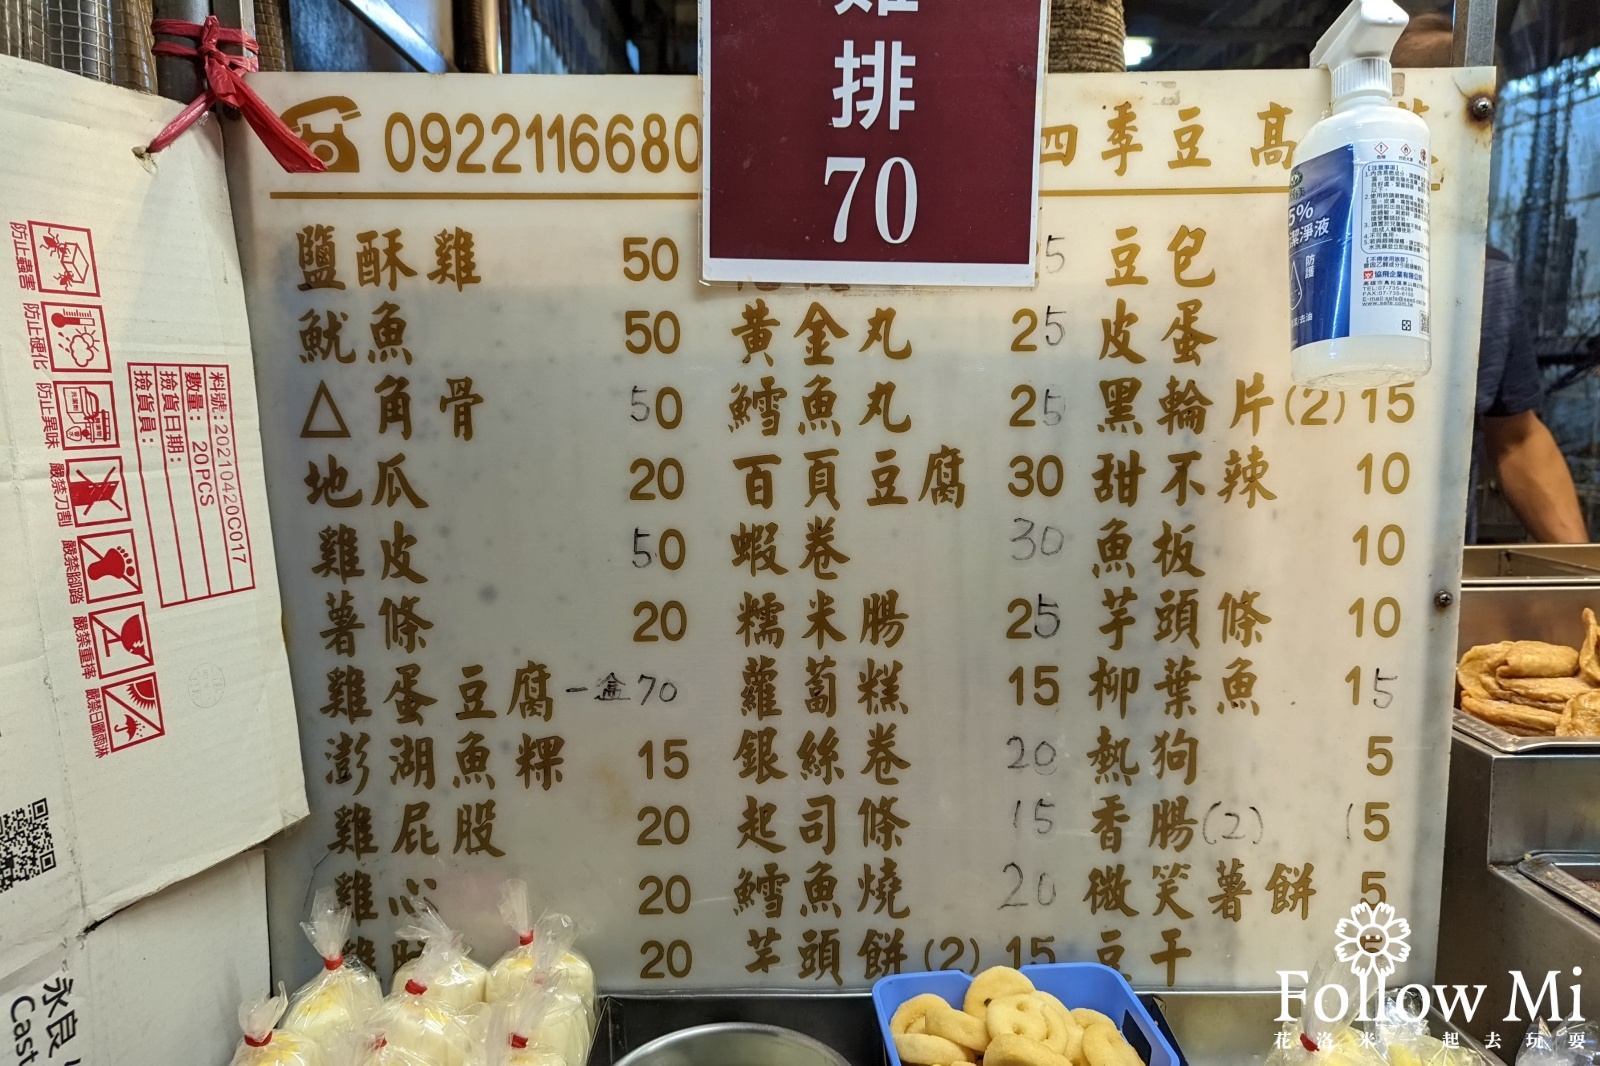 七里香鹽酥雞,澎湖美食,馬公市